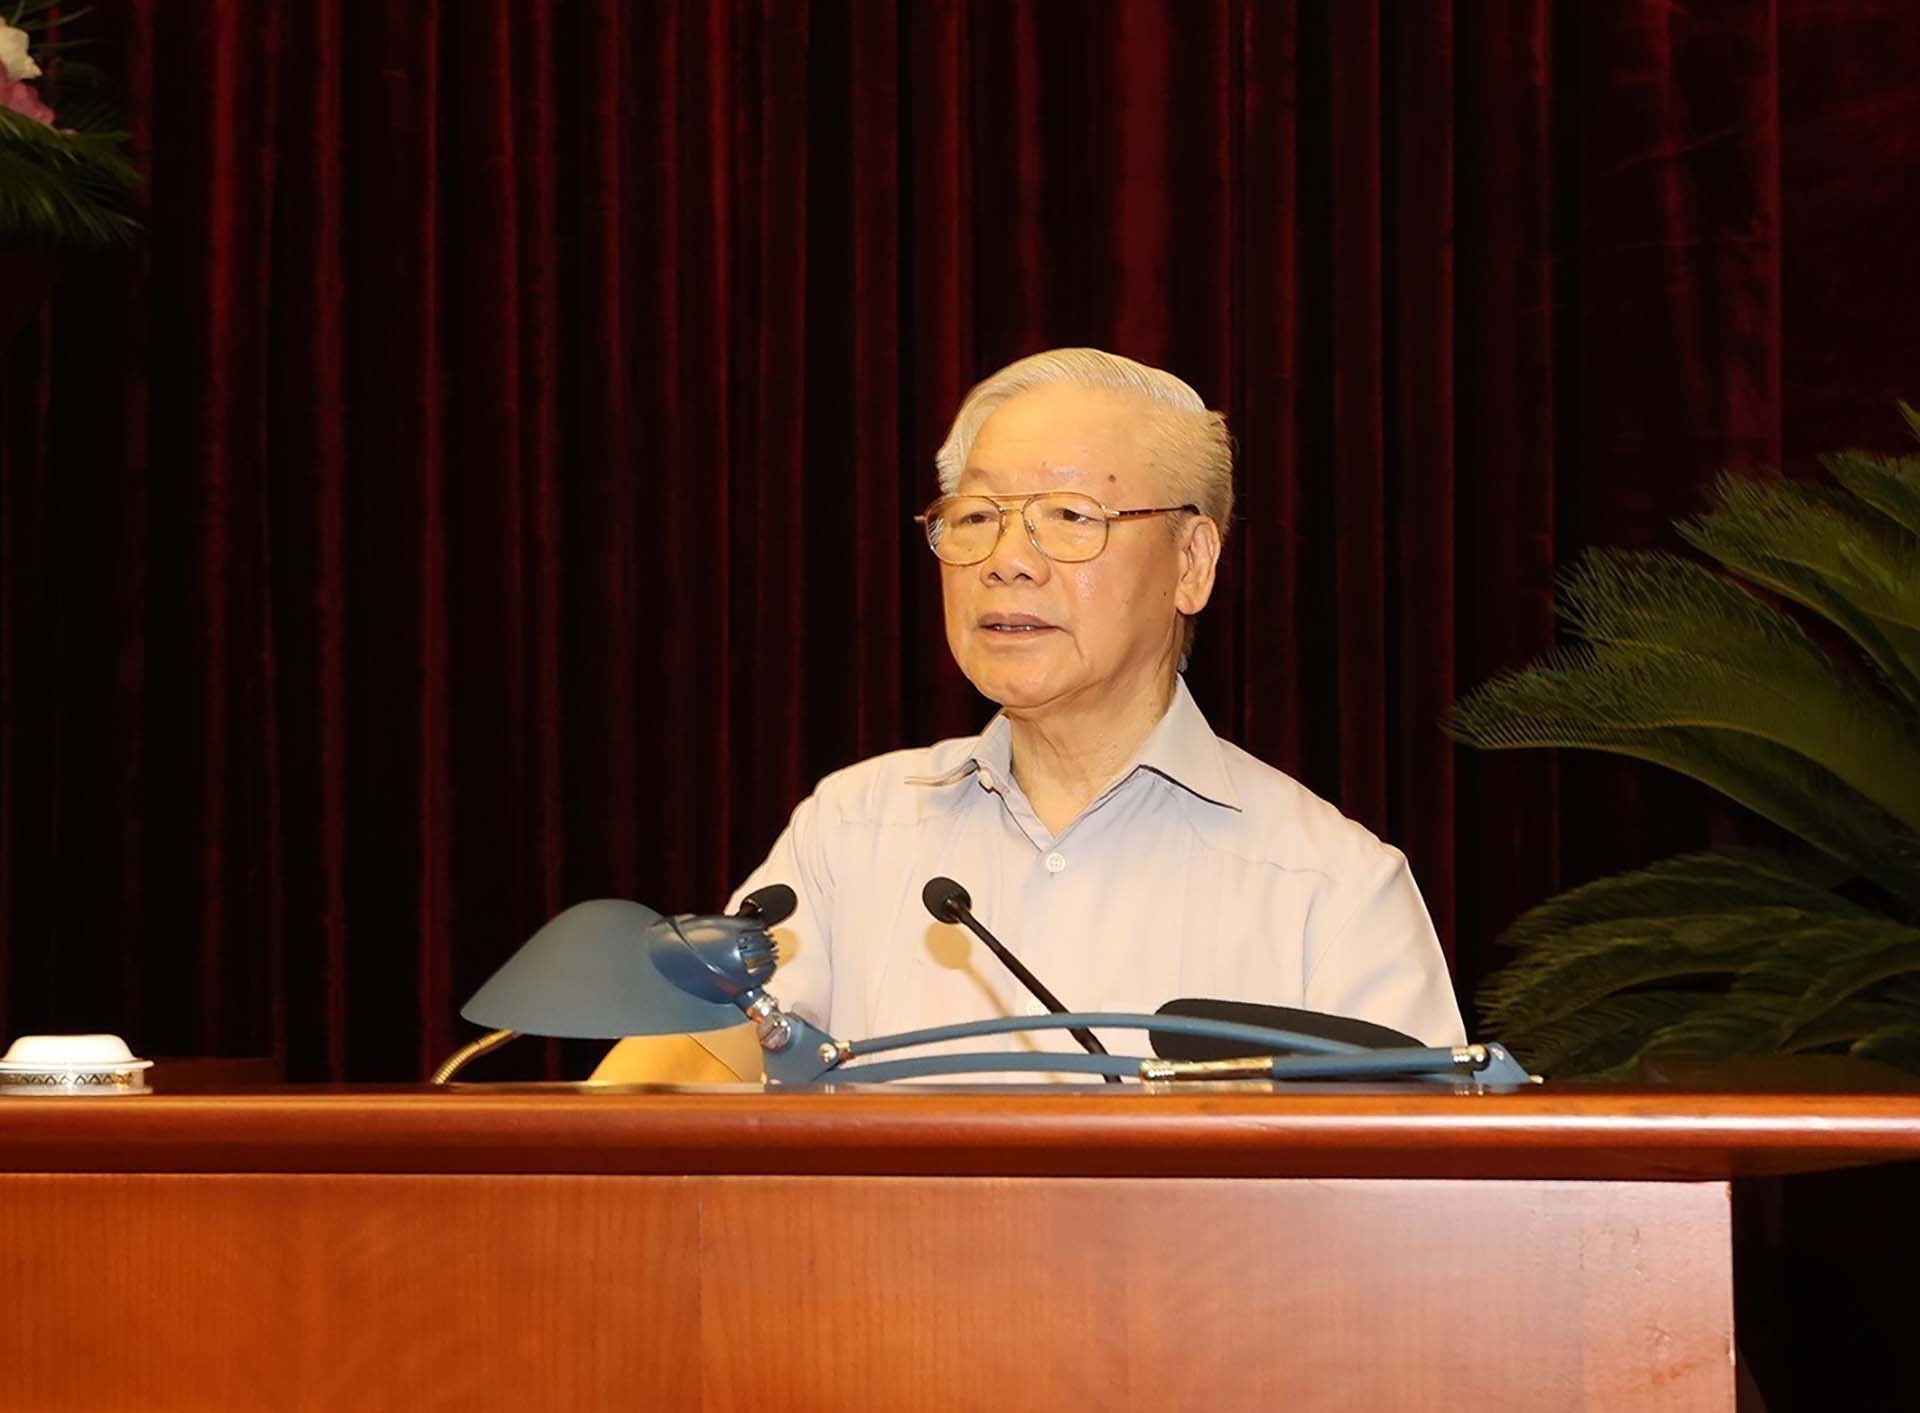 Toàn văn phát biểu của Tổng Bí thư về phòng chống tham nhũng, tiêu cực | Chính trị | Vietnam+ (VietnamPlus)